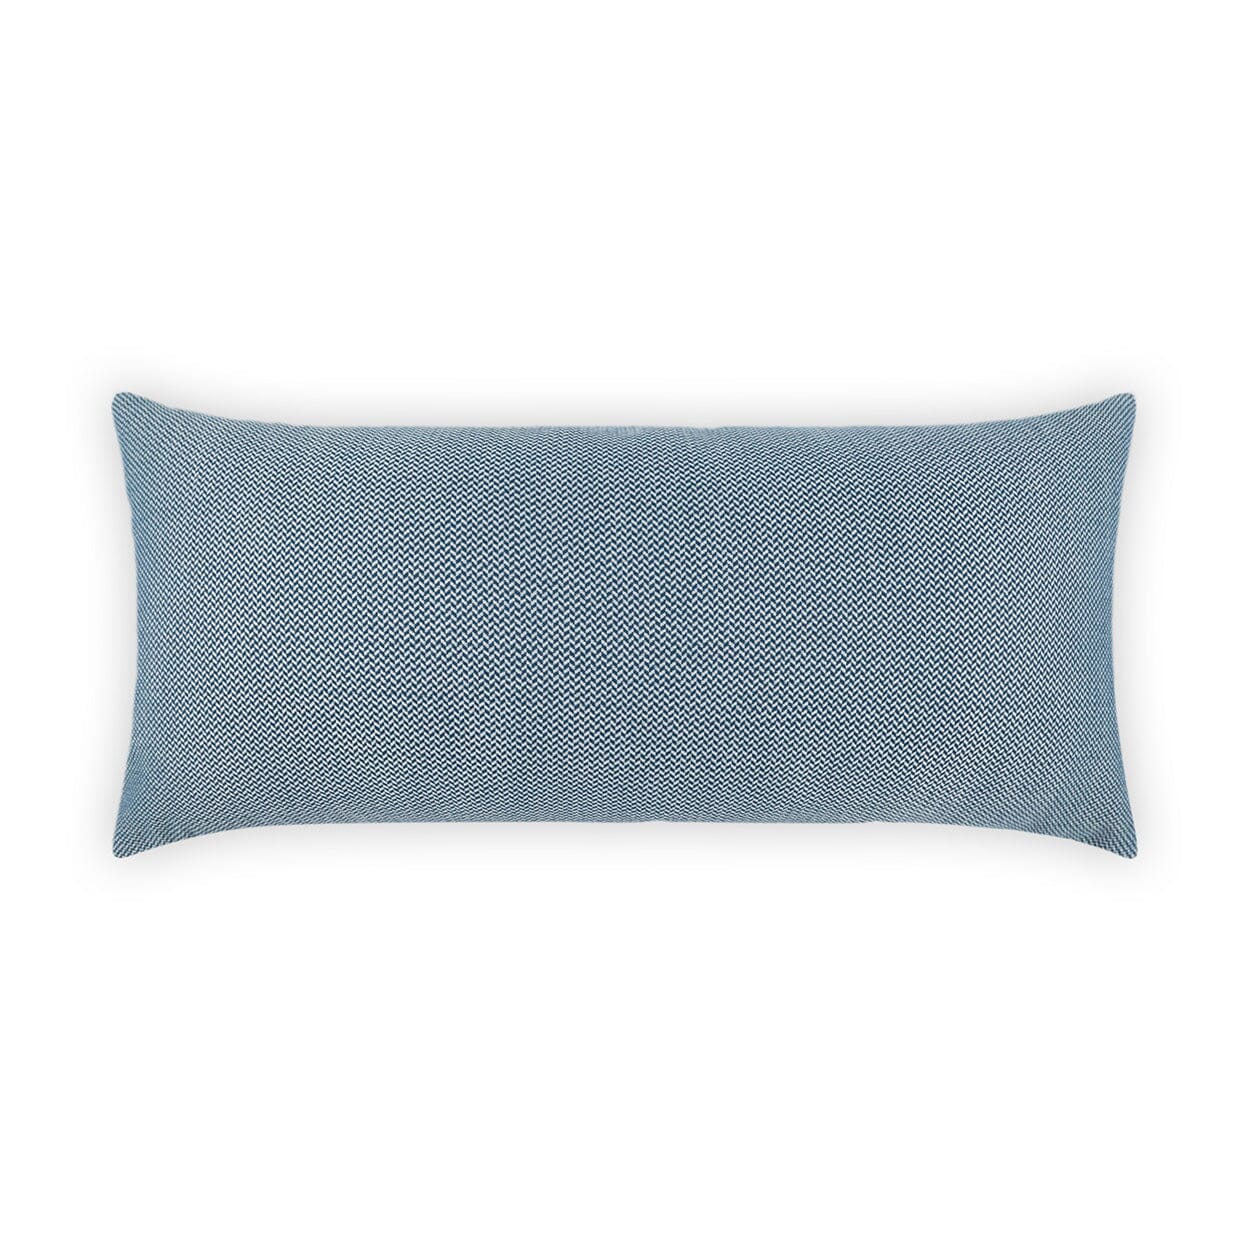 D.V. Kap 12" x 24" Outdoor Lumbar Pillow | Pyke Blue Lumbar Pillows D.V Kap Outdoor